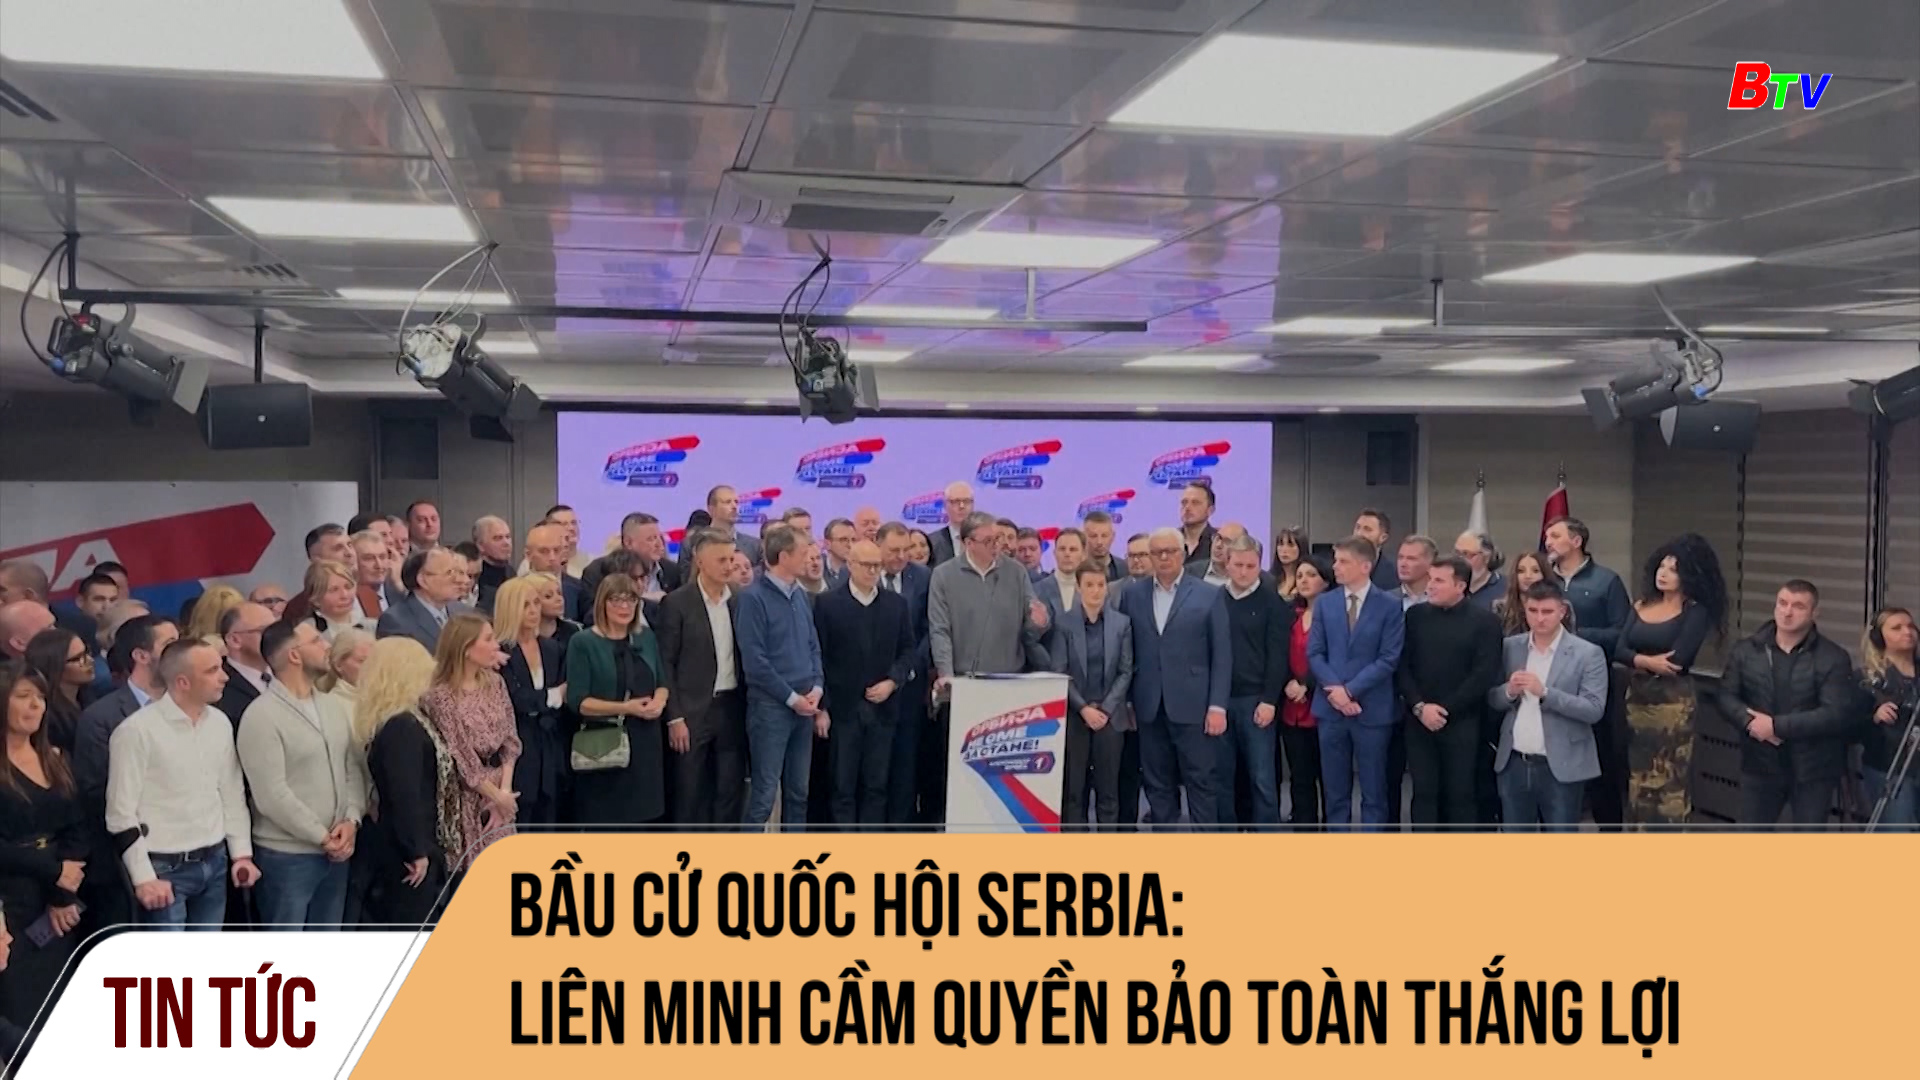 Bầu cử Quốc hội Serbia: liên minh cầm quyền bảo toàn thắng lợi	